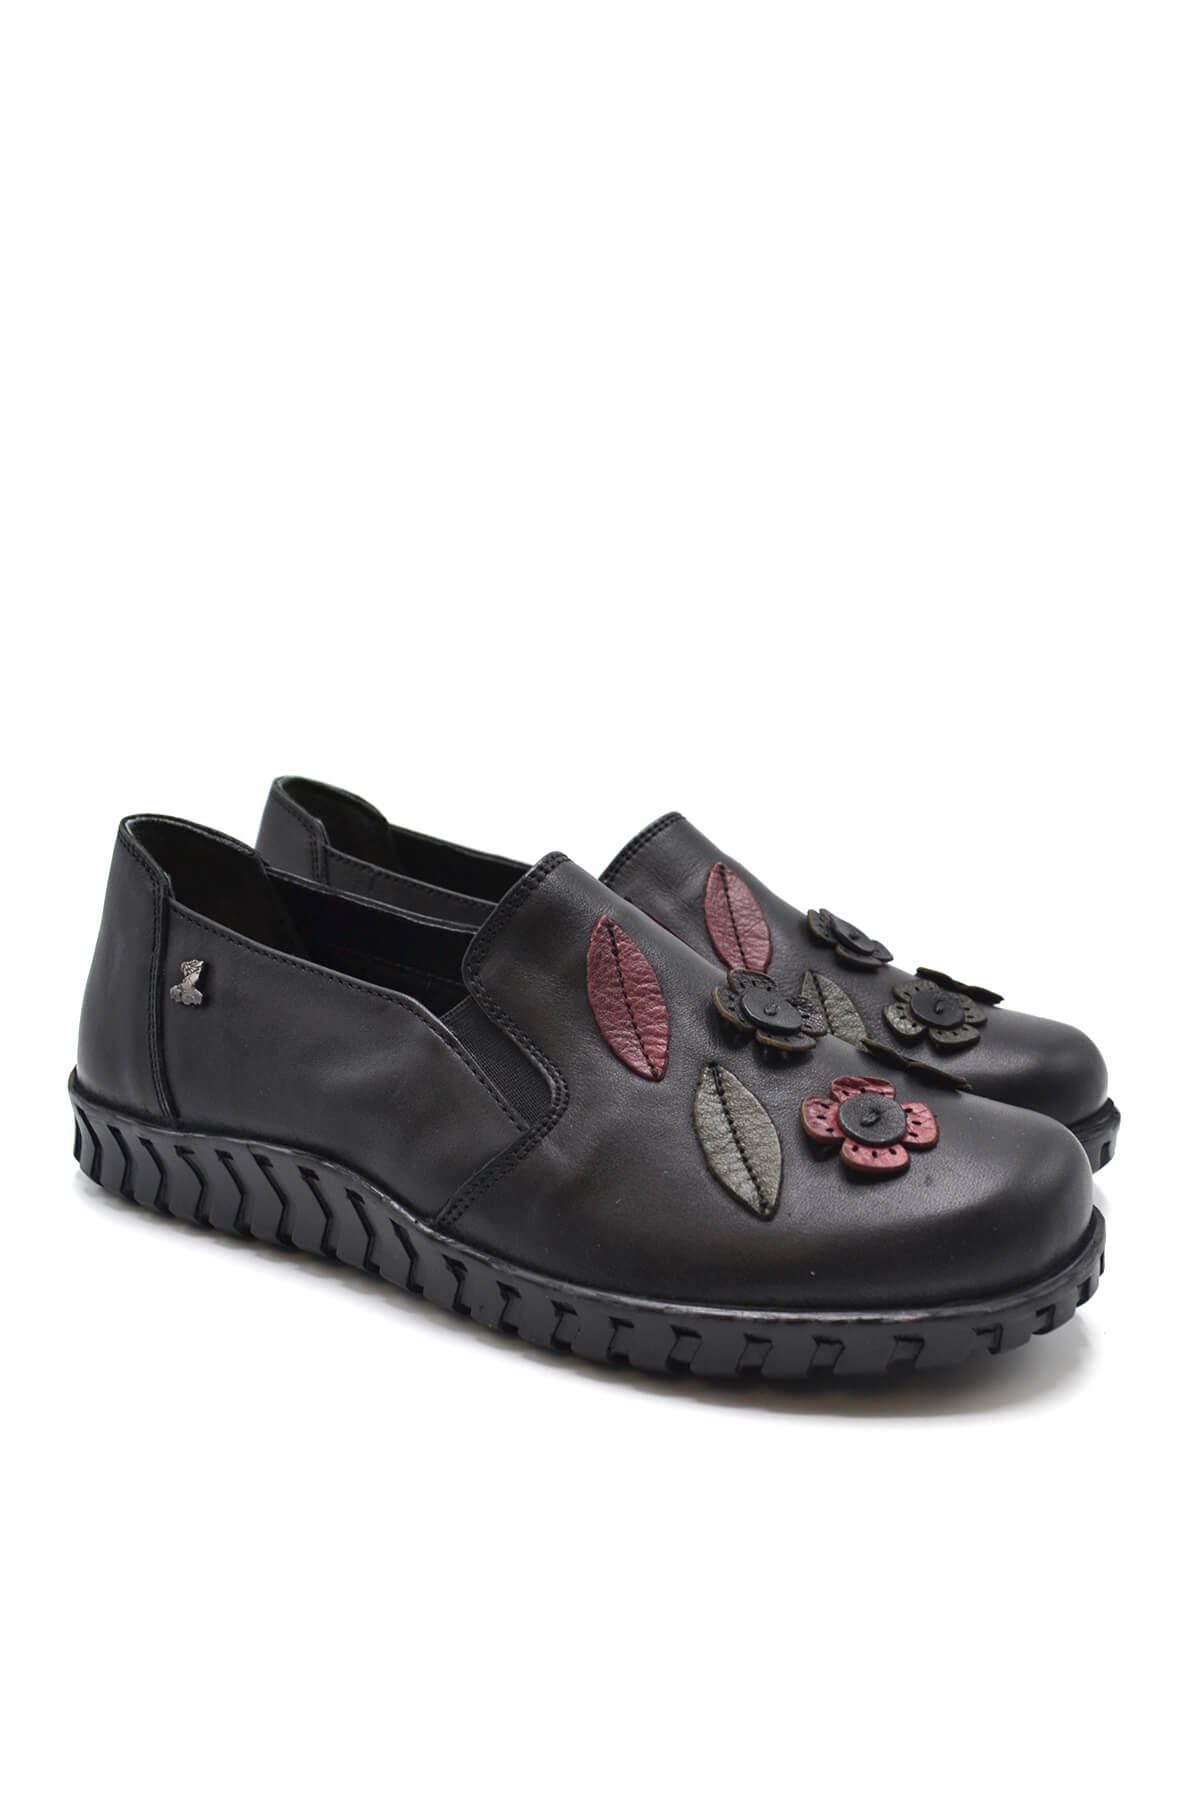 Kadın Comfort Deri Ayakkabı Siyah 2050862K - Thumbnail